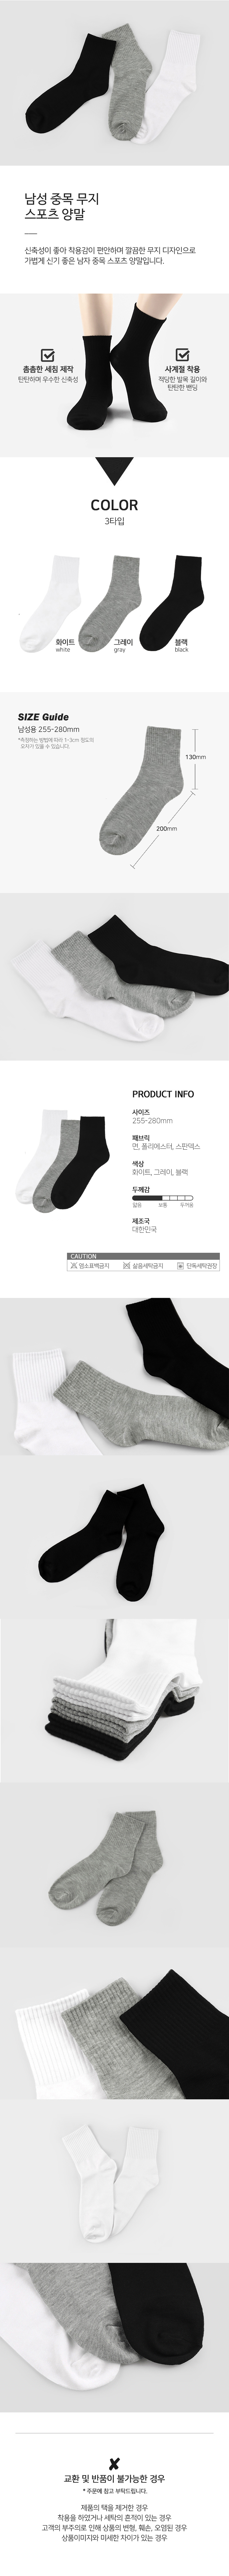 socks_00103.jpg